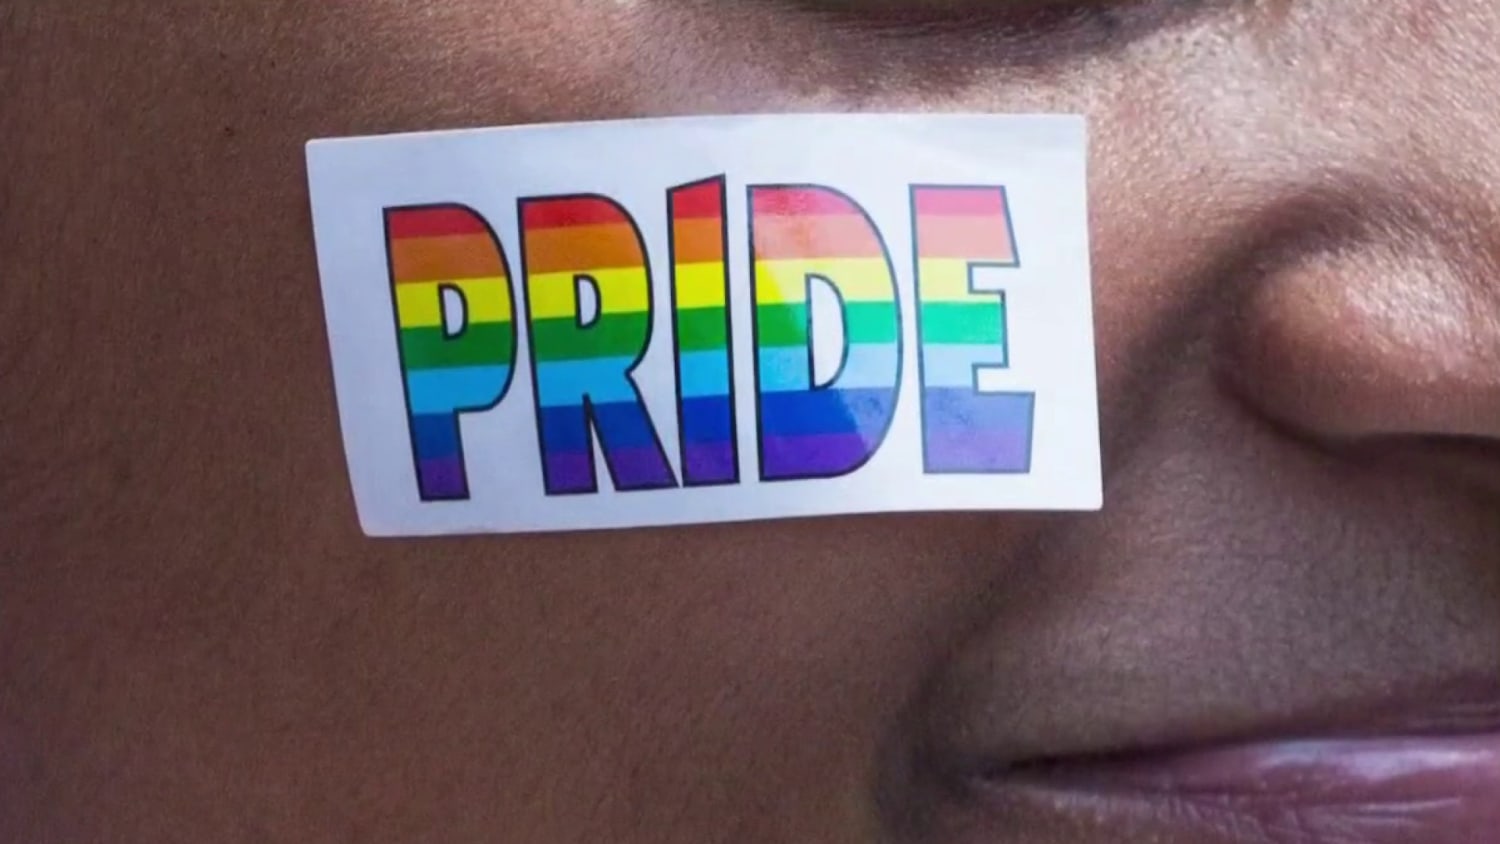 dallas gay pride stickers